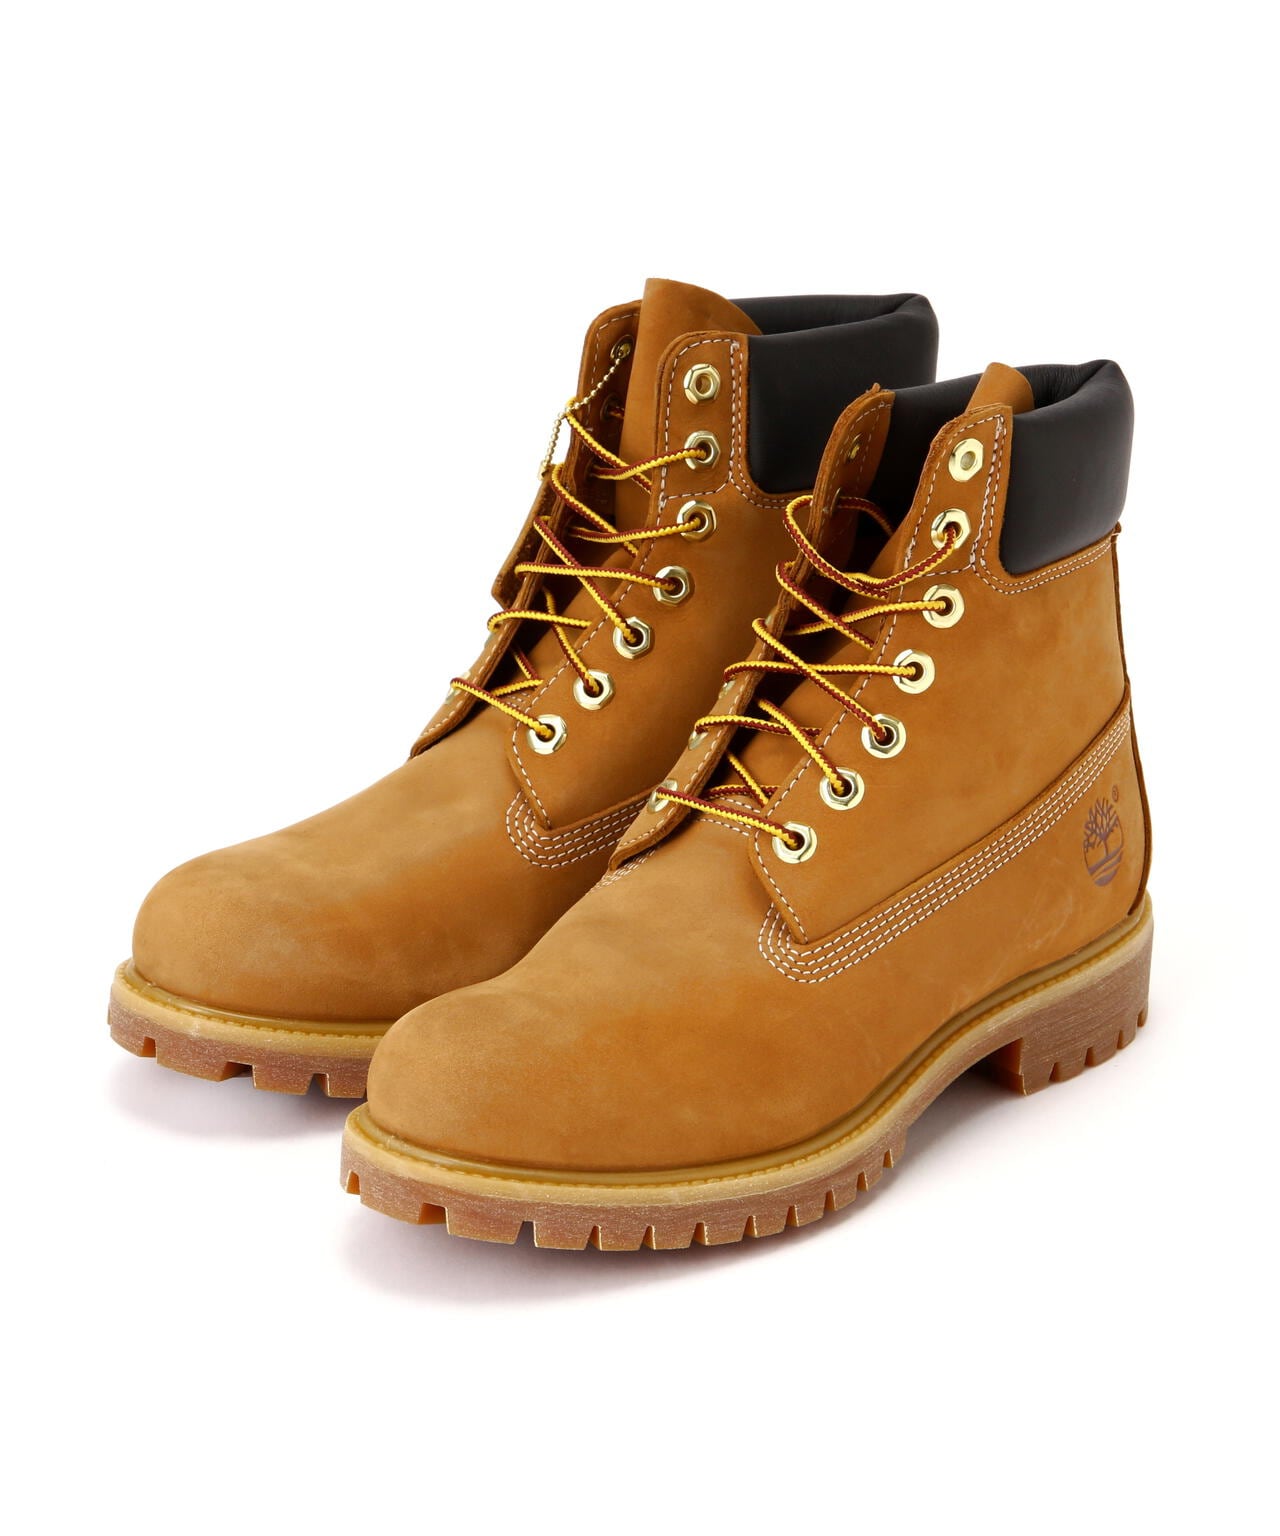 Timberland/ティンバーランド/6inch Premium Boots/6インチ プレミアムブーツ